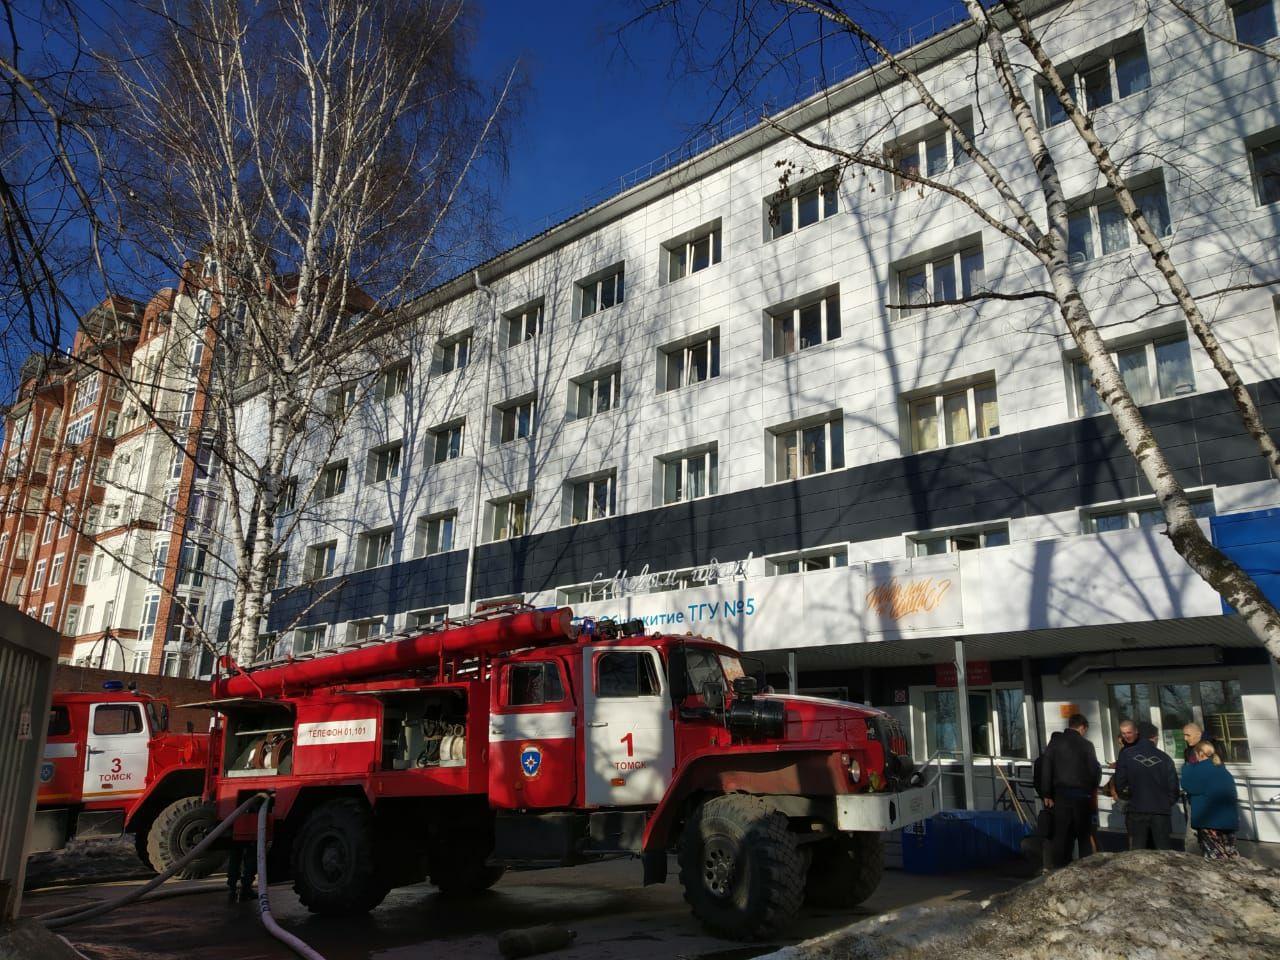 Происшествия, Томские новости, пожар эвакуация происшествия пожары сгорели загорелись пожарные машины чп В одном из общежитий ТГУ произошел пожар